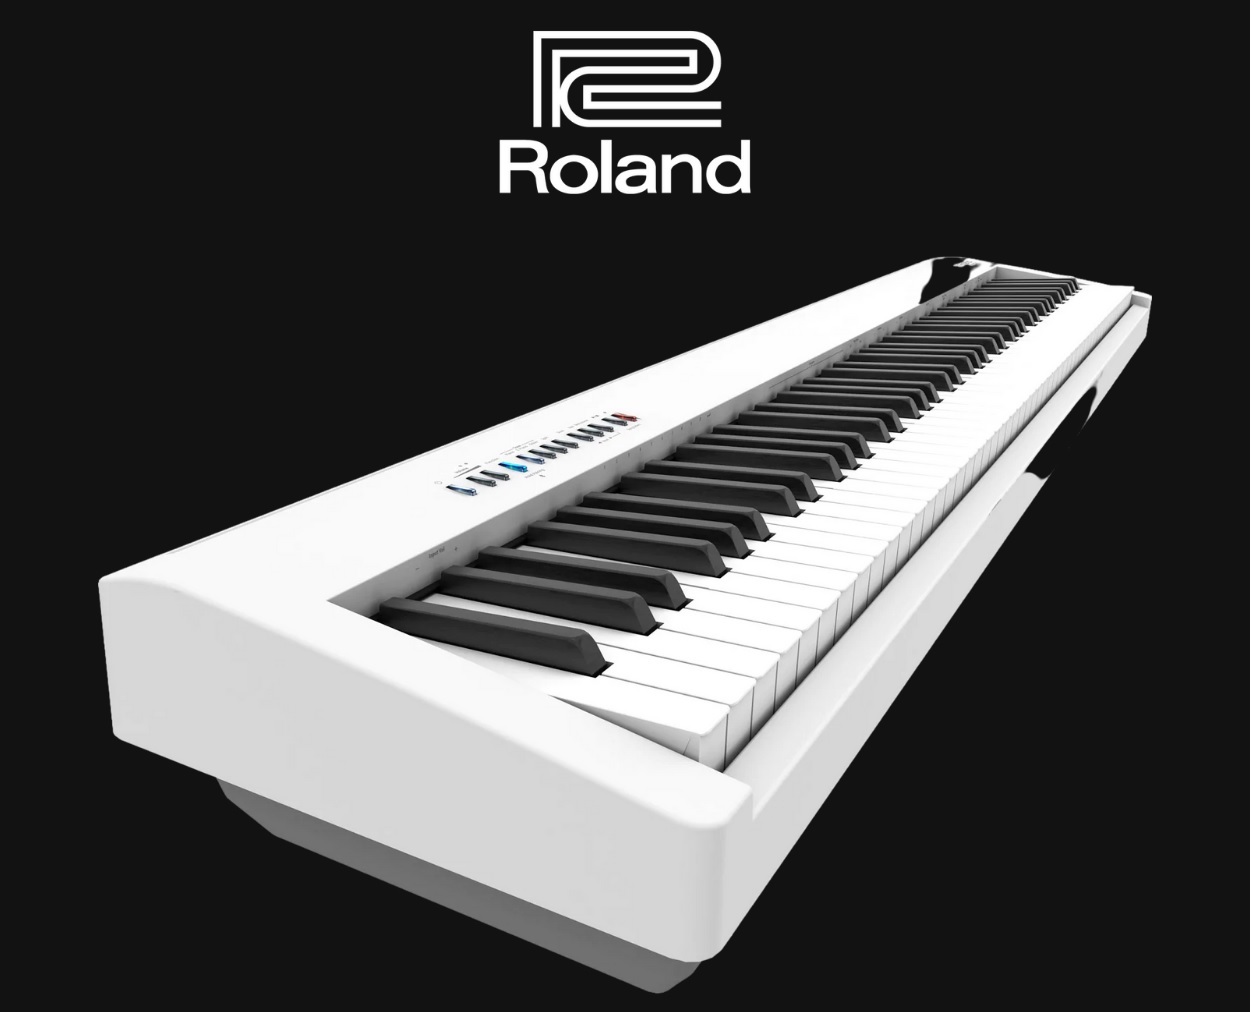 Roland FP30x Digital Piano -HONG KONG